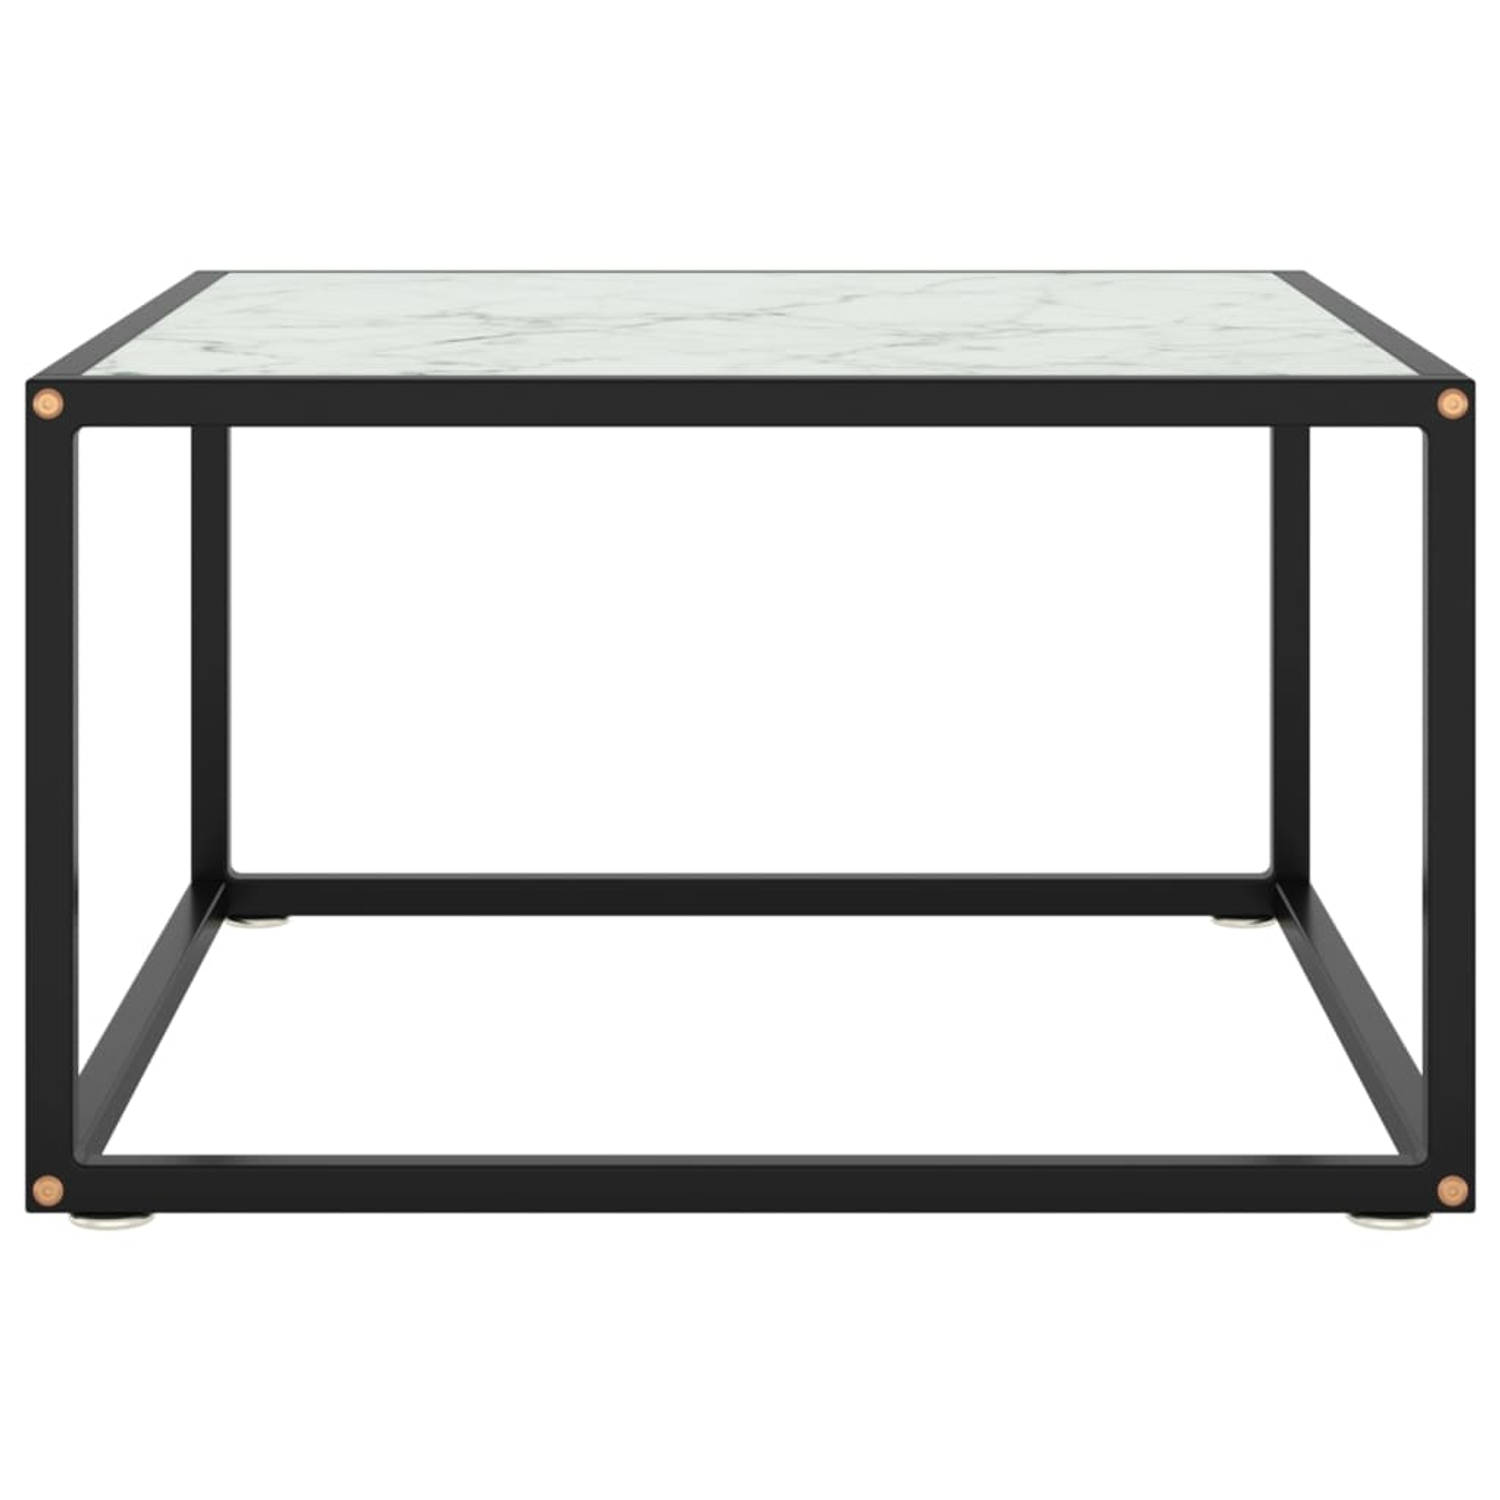 The Living Store Salontafel praktische woonkamertafel Glas-staal 60 x 60 x 35 cm Zwart-wit